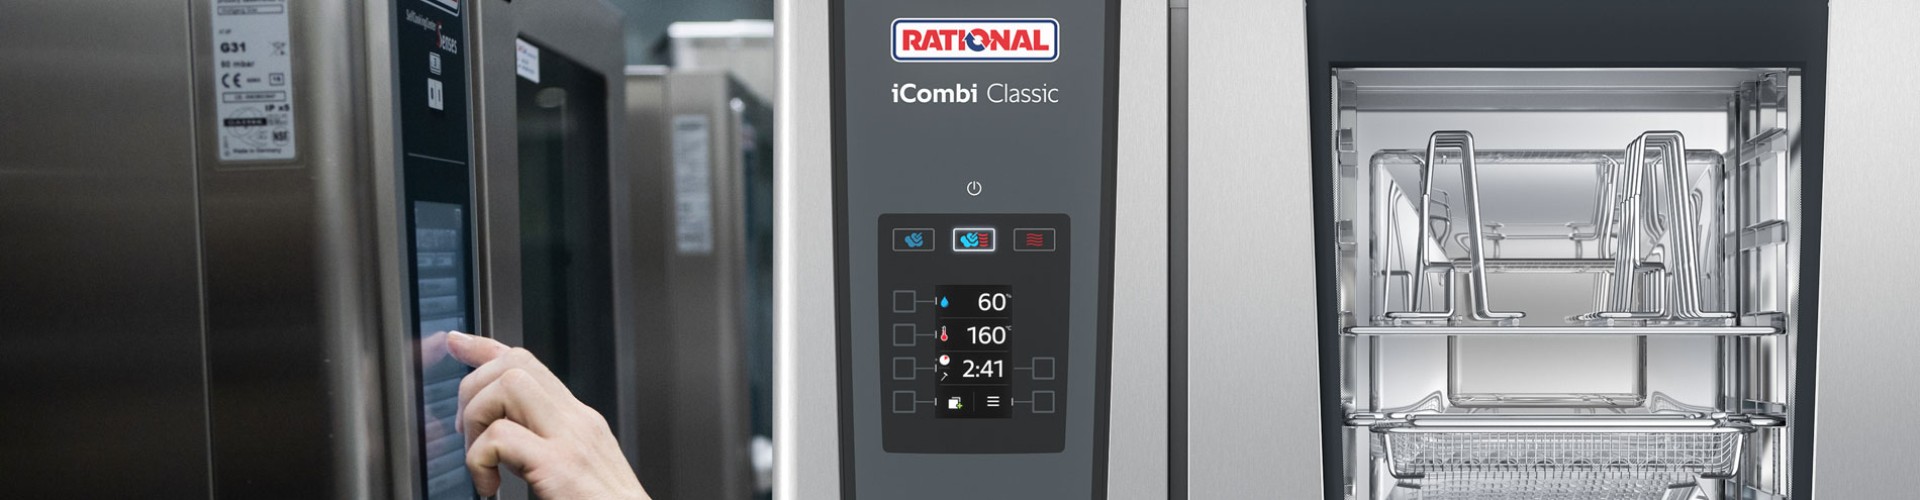 Rational iCombi Classic 20 khay GN2/1 | Lò hấp nướng kết hợp